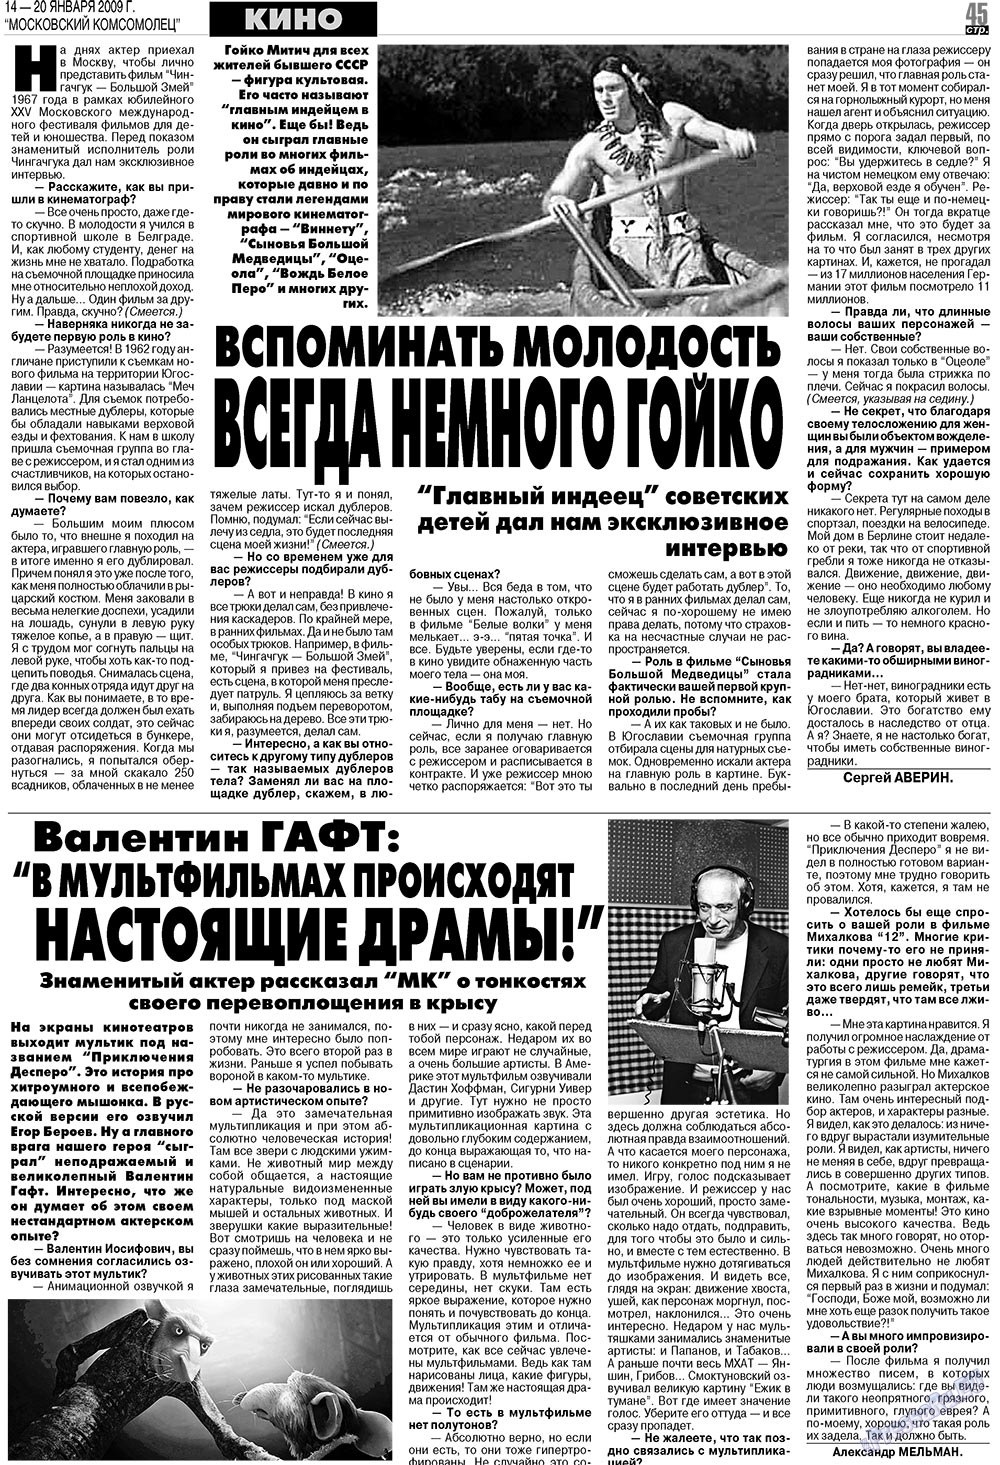 МК Испания, газета. 2009 №3 стр.45